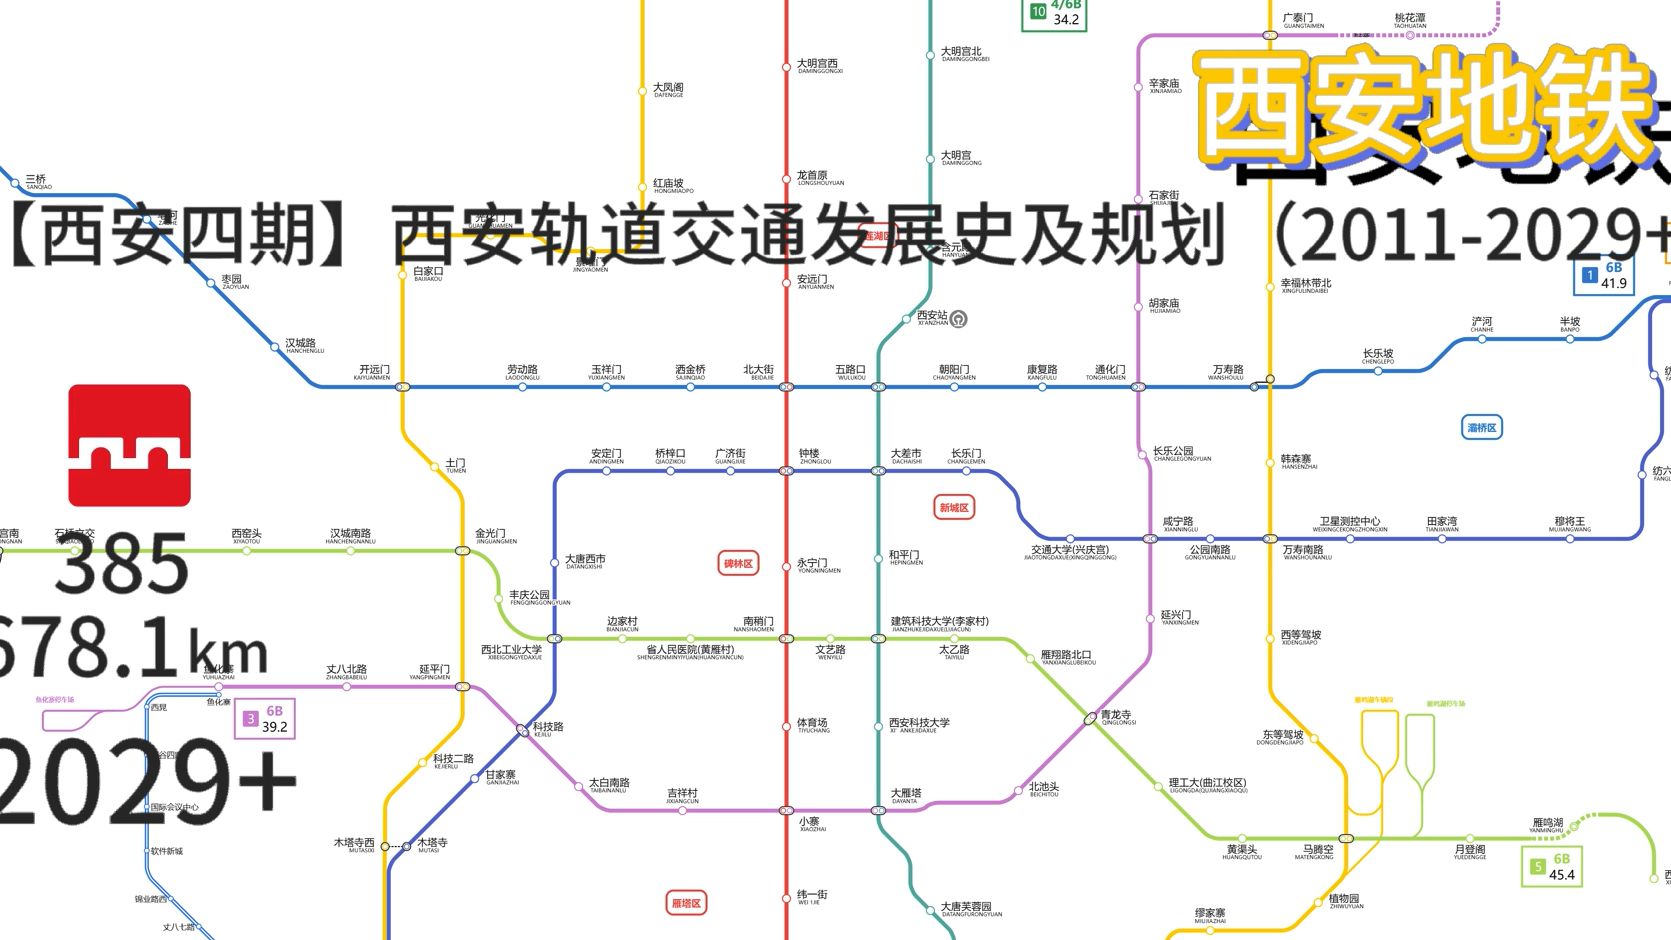 【西安地铁】西安轨道交通发展史及四期规划（2011-2029+）